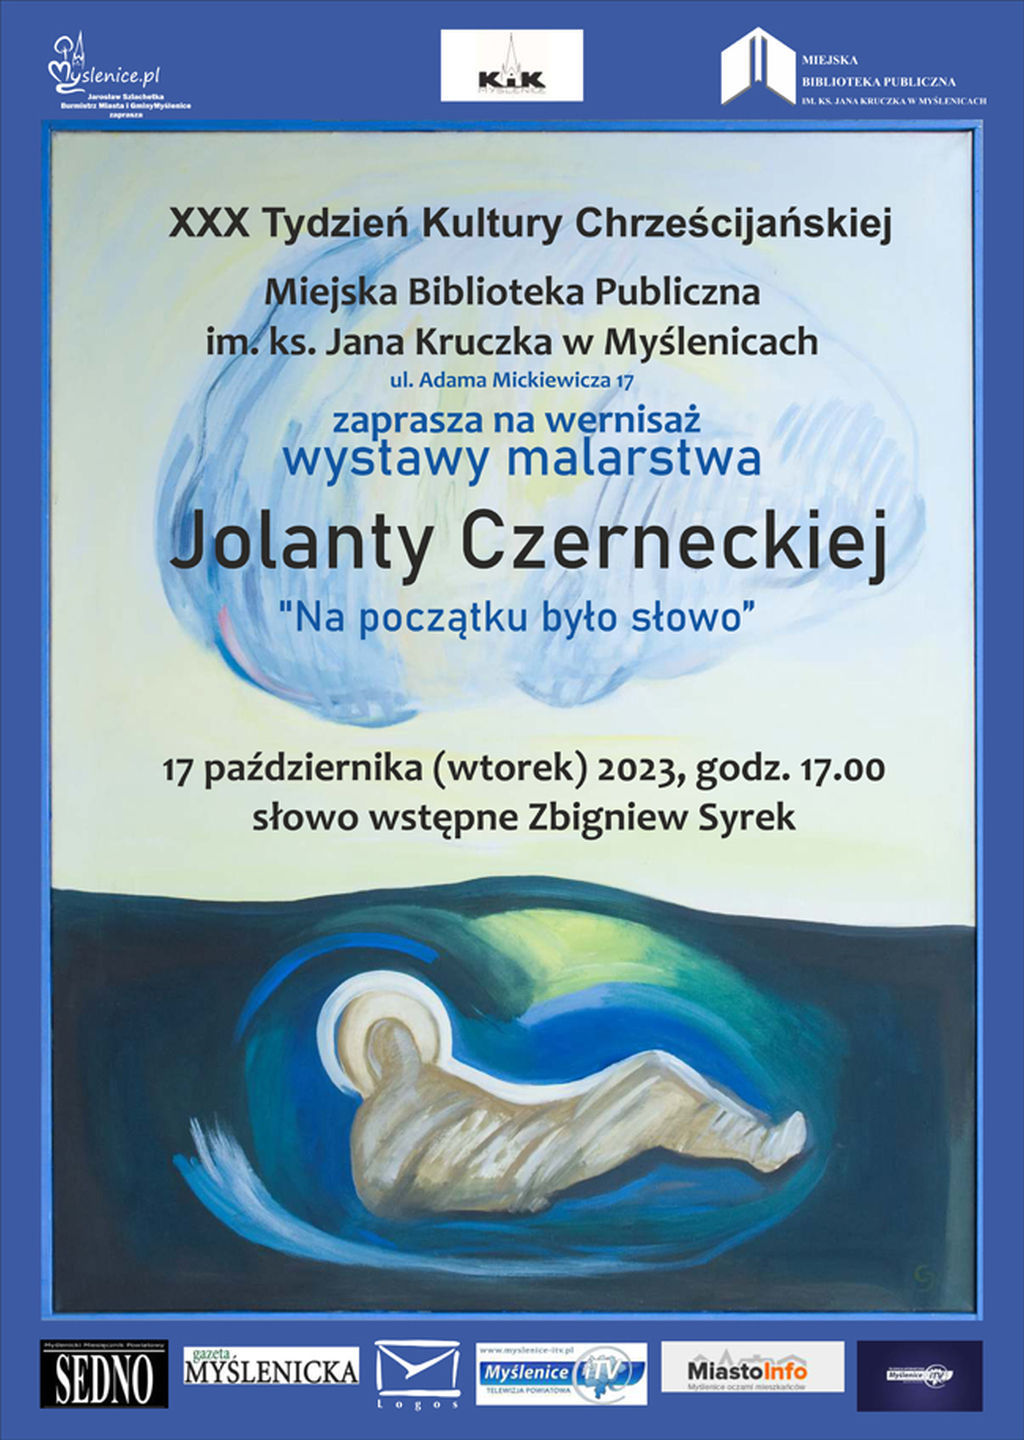 Wernisaż wystawy malarstwa Jolanty Czerneckiej (zaproszenie)